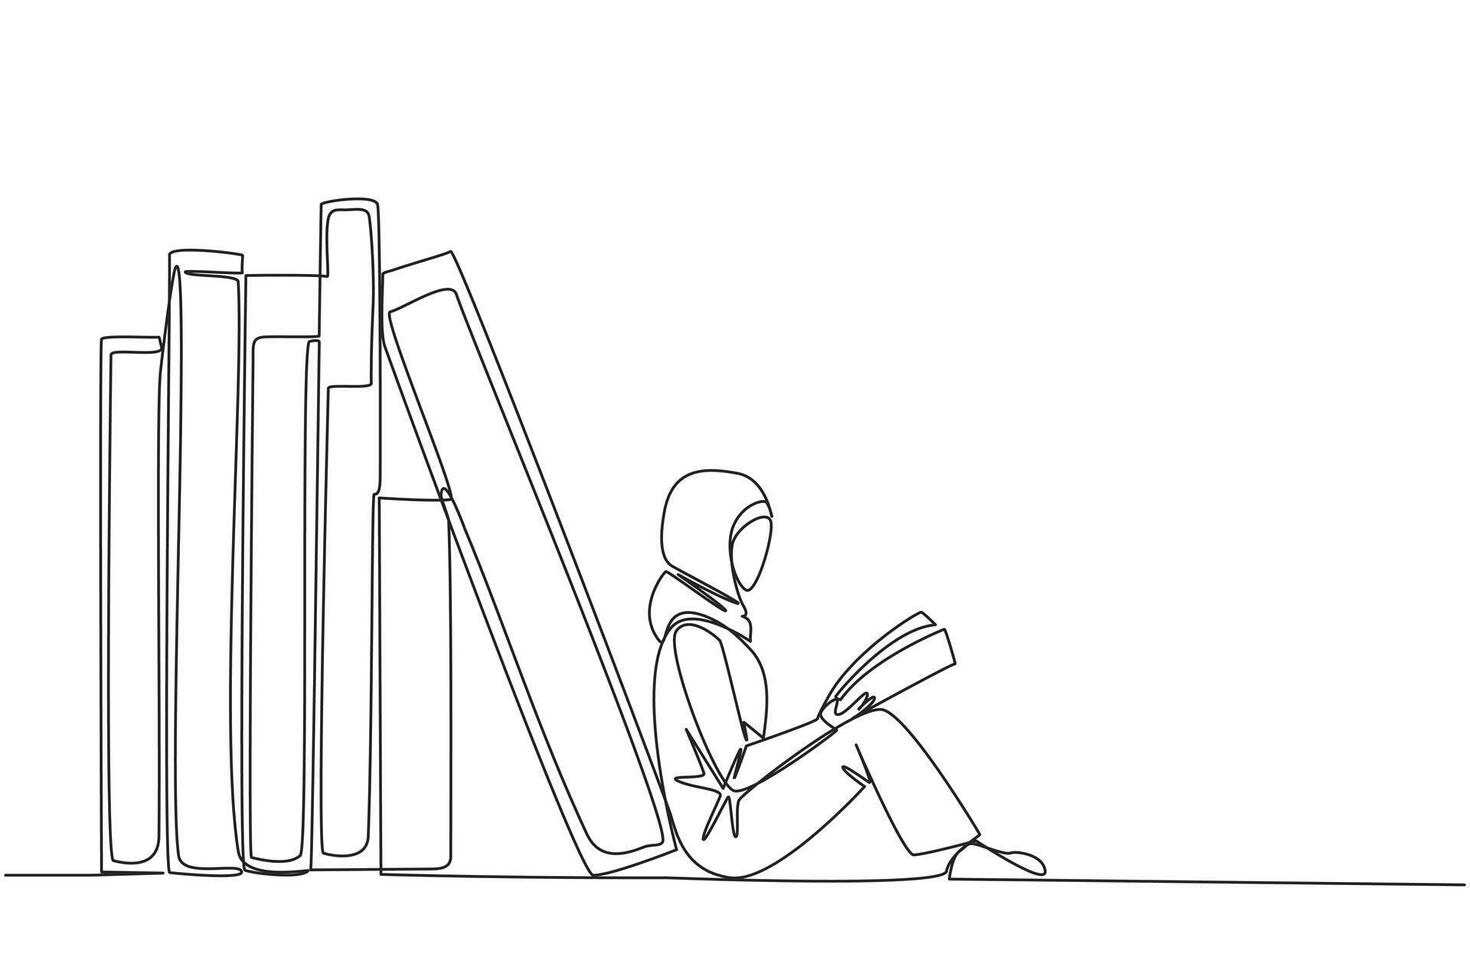 kontinuierlich einer Linie Zeichnung arabisch Frau lesen Sitzung gelehnt gegen Stapel von Bücher. Gewohnheit von lesen Bücher jeder Tag. Bibliothek. Buch Festival Konzept. Single Linie zeichnen Design Illustration vektor